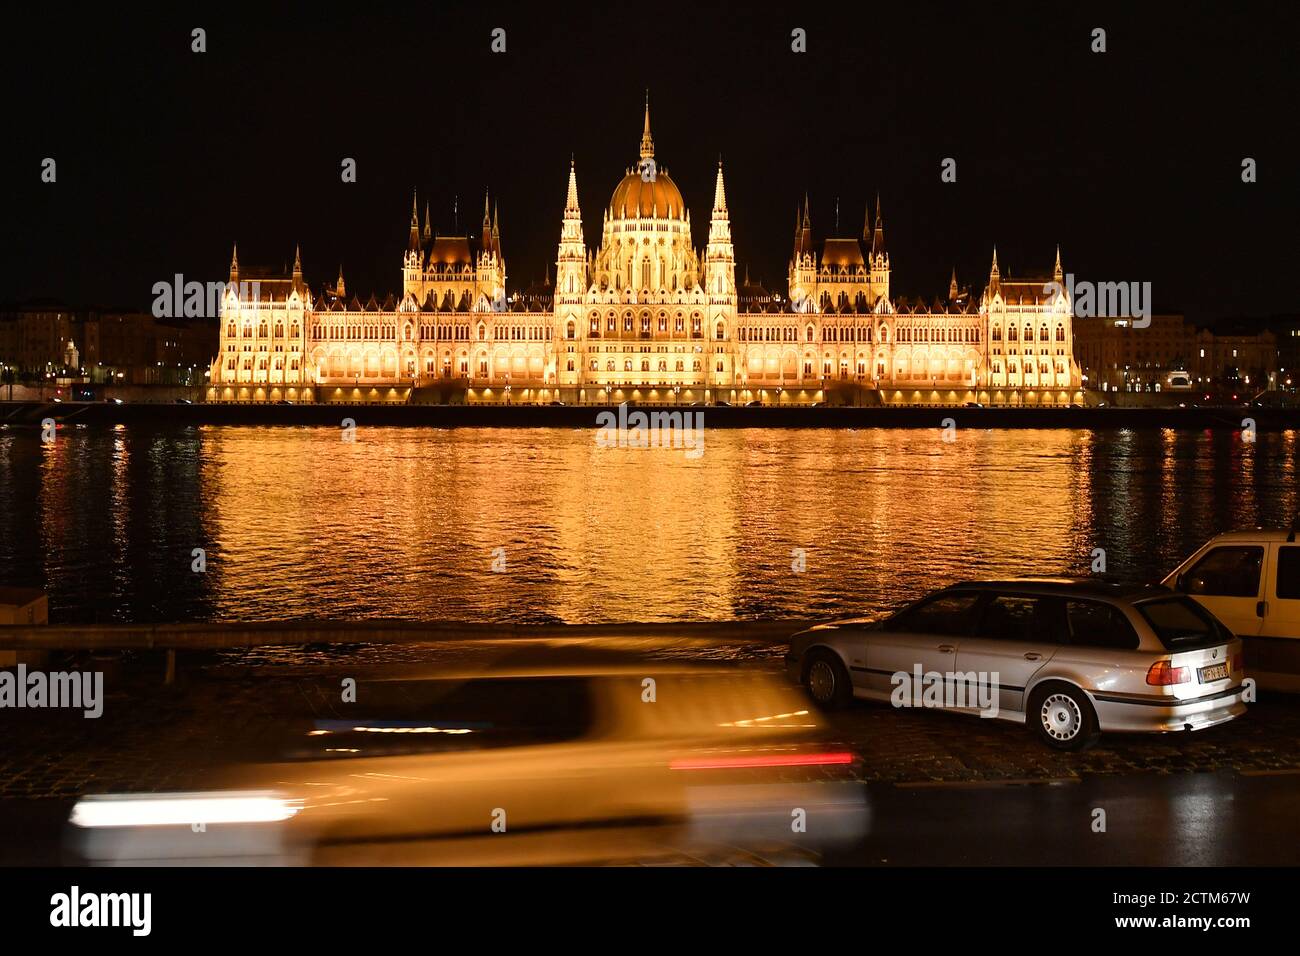 L'edificio del parlamento, nella vecchia Reichstag tedesca, è la sede del parlamento ungherese a Budapest. L'edificio, lungo 268 metri, è situato direttamente sulle rive del Danubio ed è uno dei punti di riferimento di Budapest. 23.09.2020 | utilizzo in tutto il mondo Foto Stock